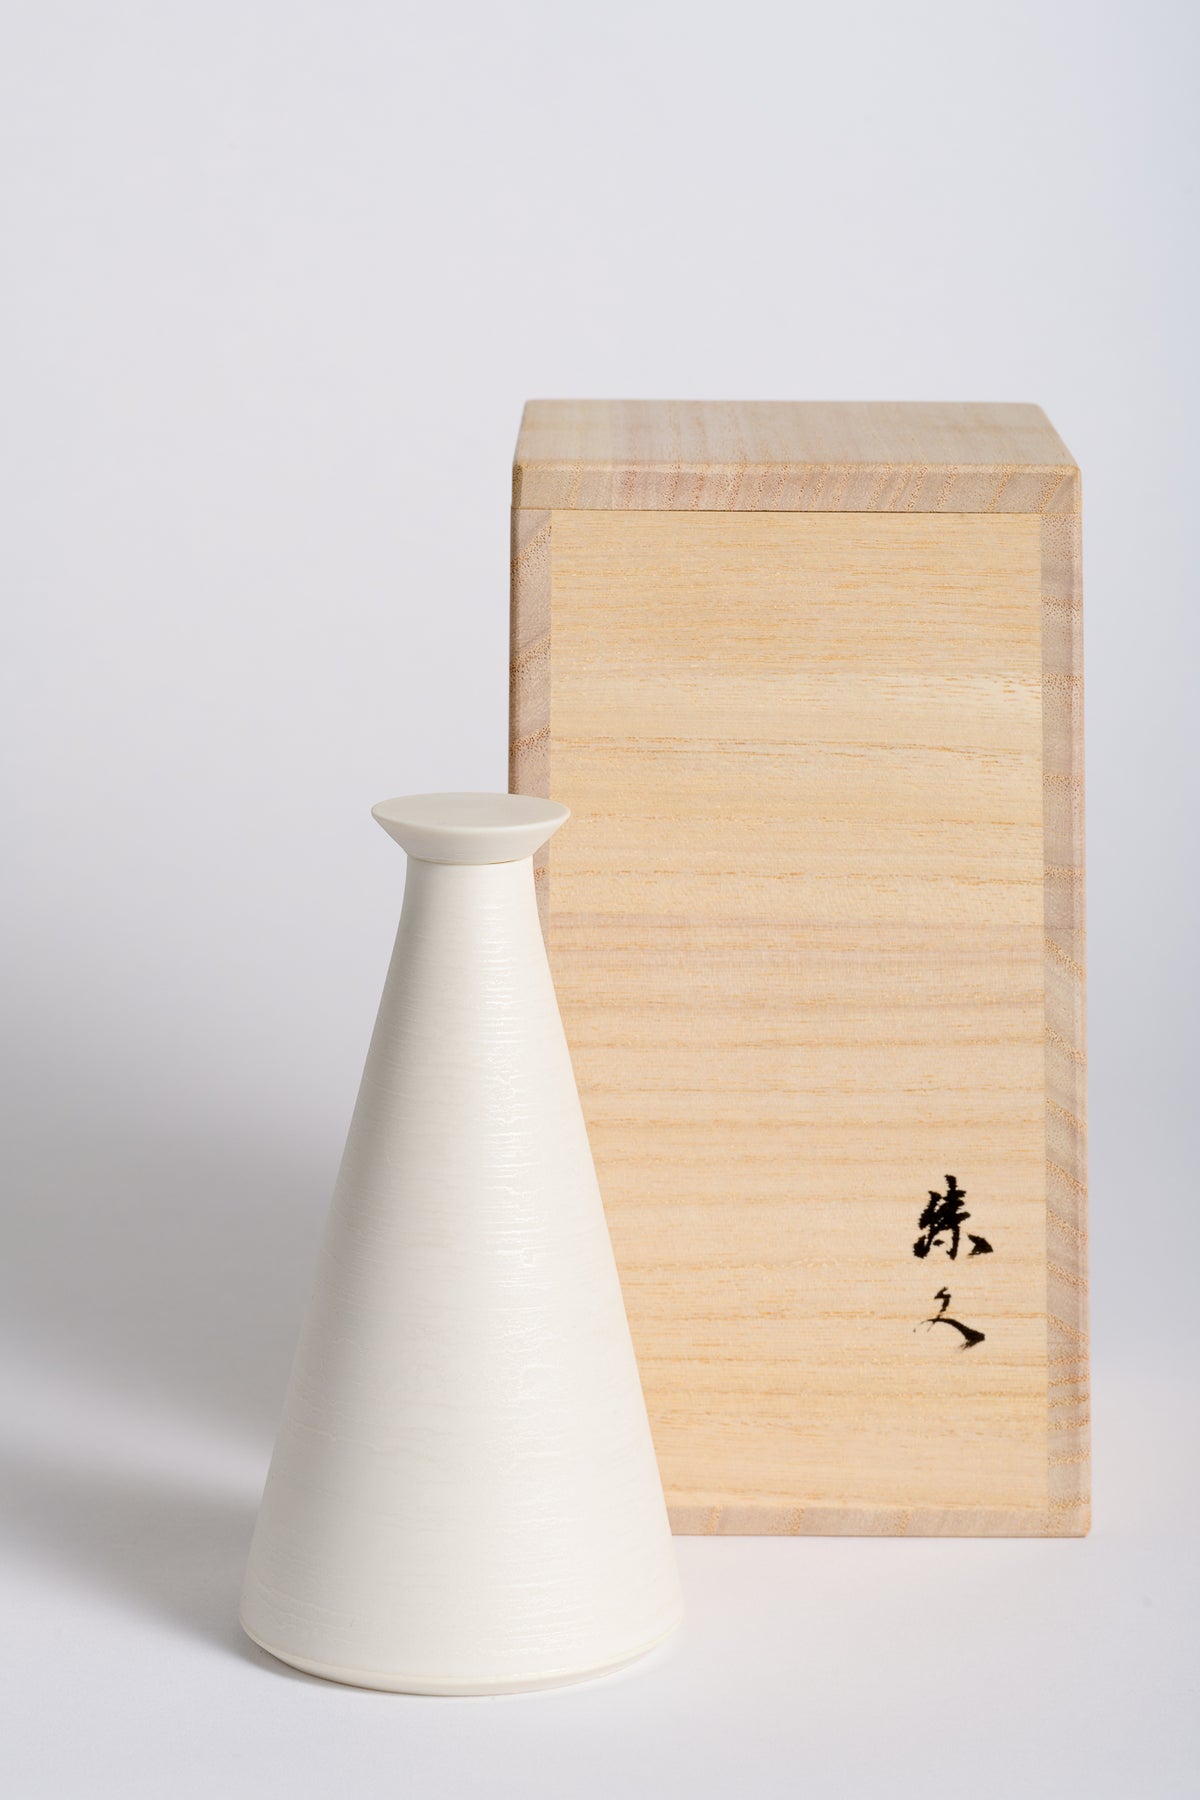 Katuhisa Kitano 設計的 SHHH 獨家限量版陶瓷瓶